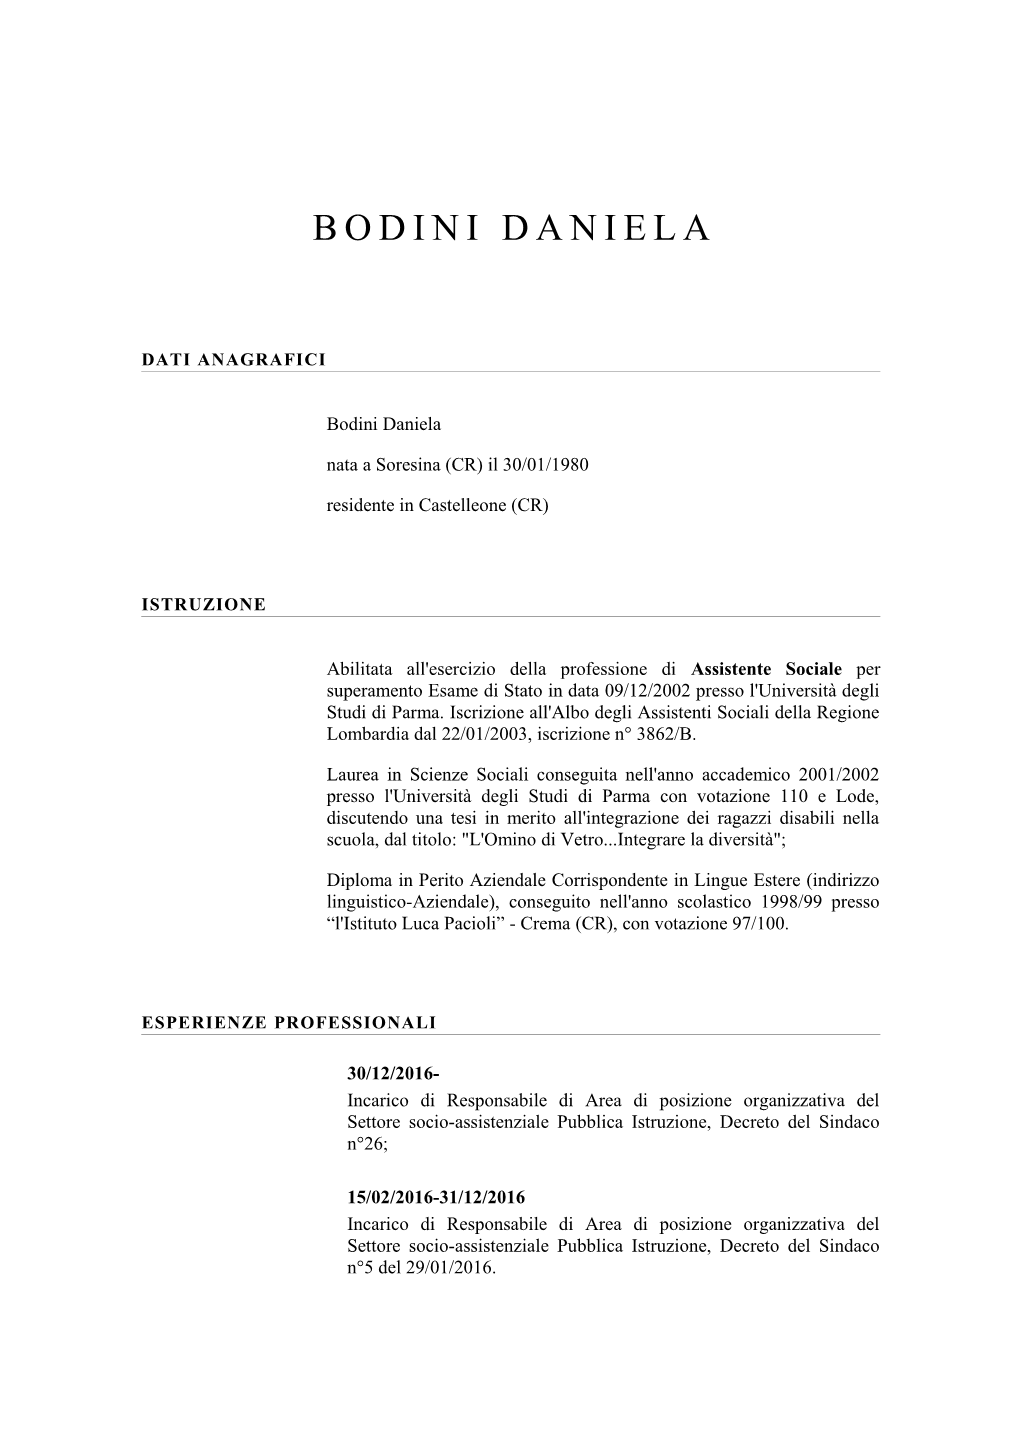 Download Curriculum Bodini